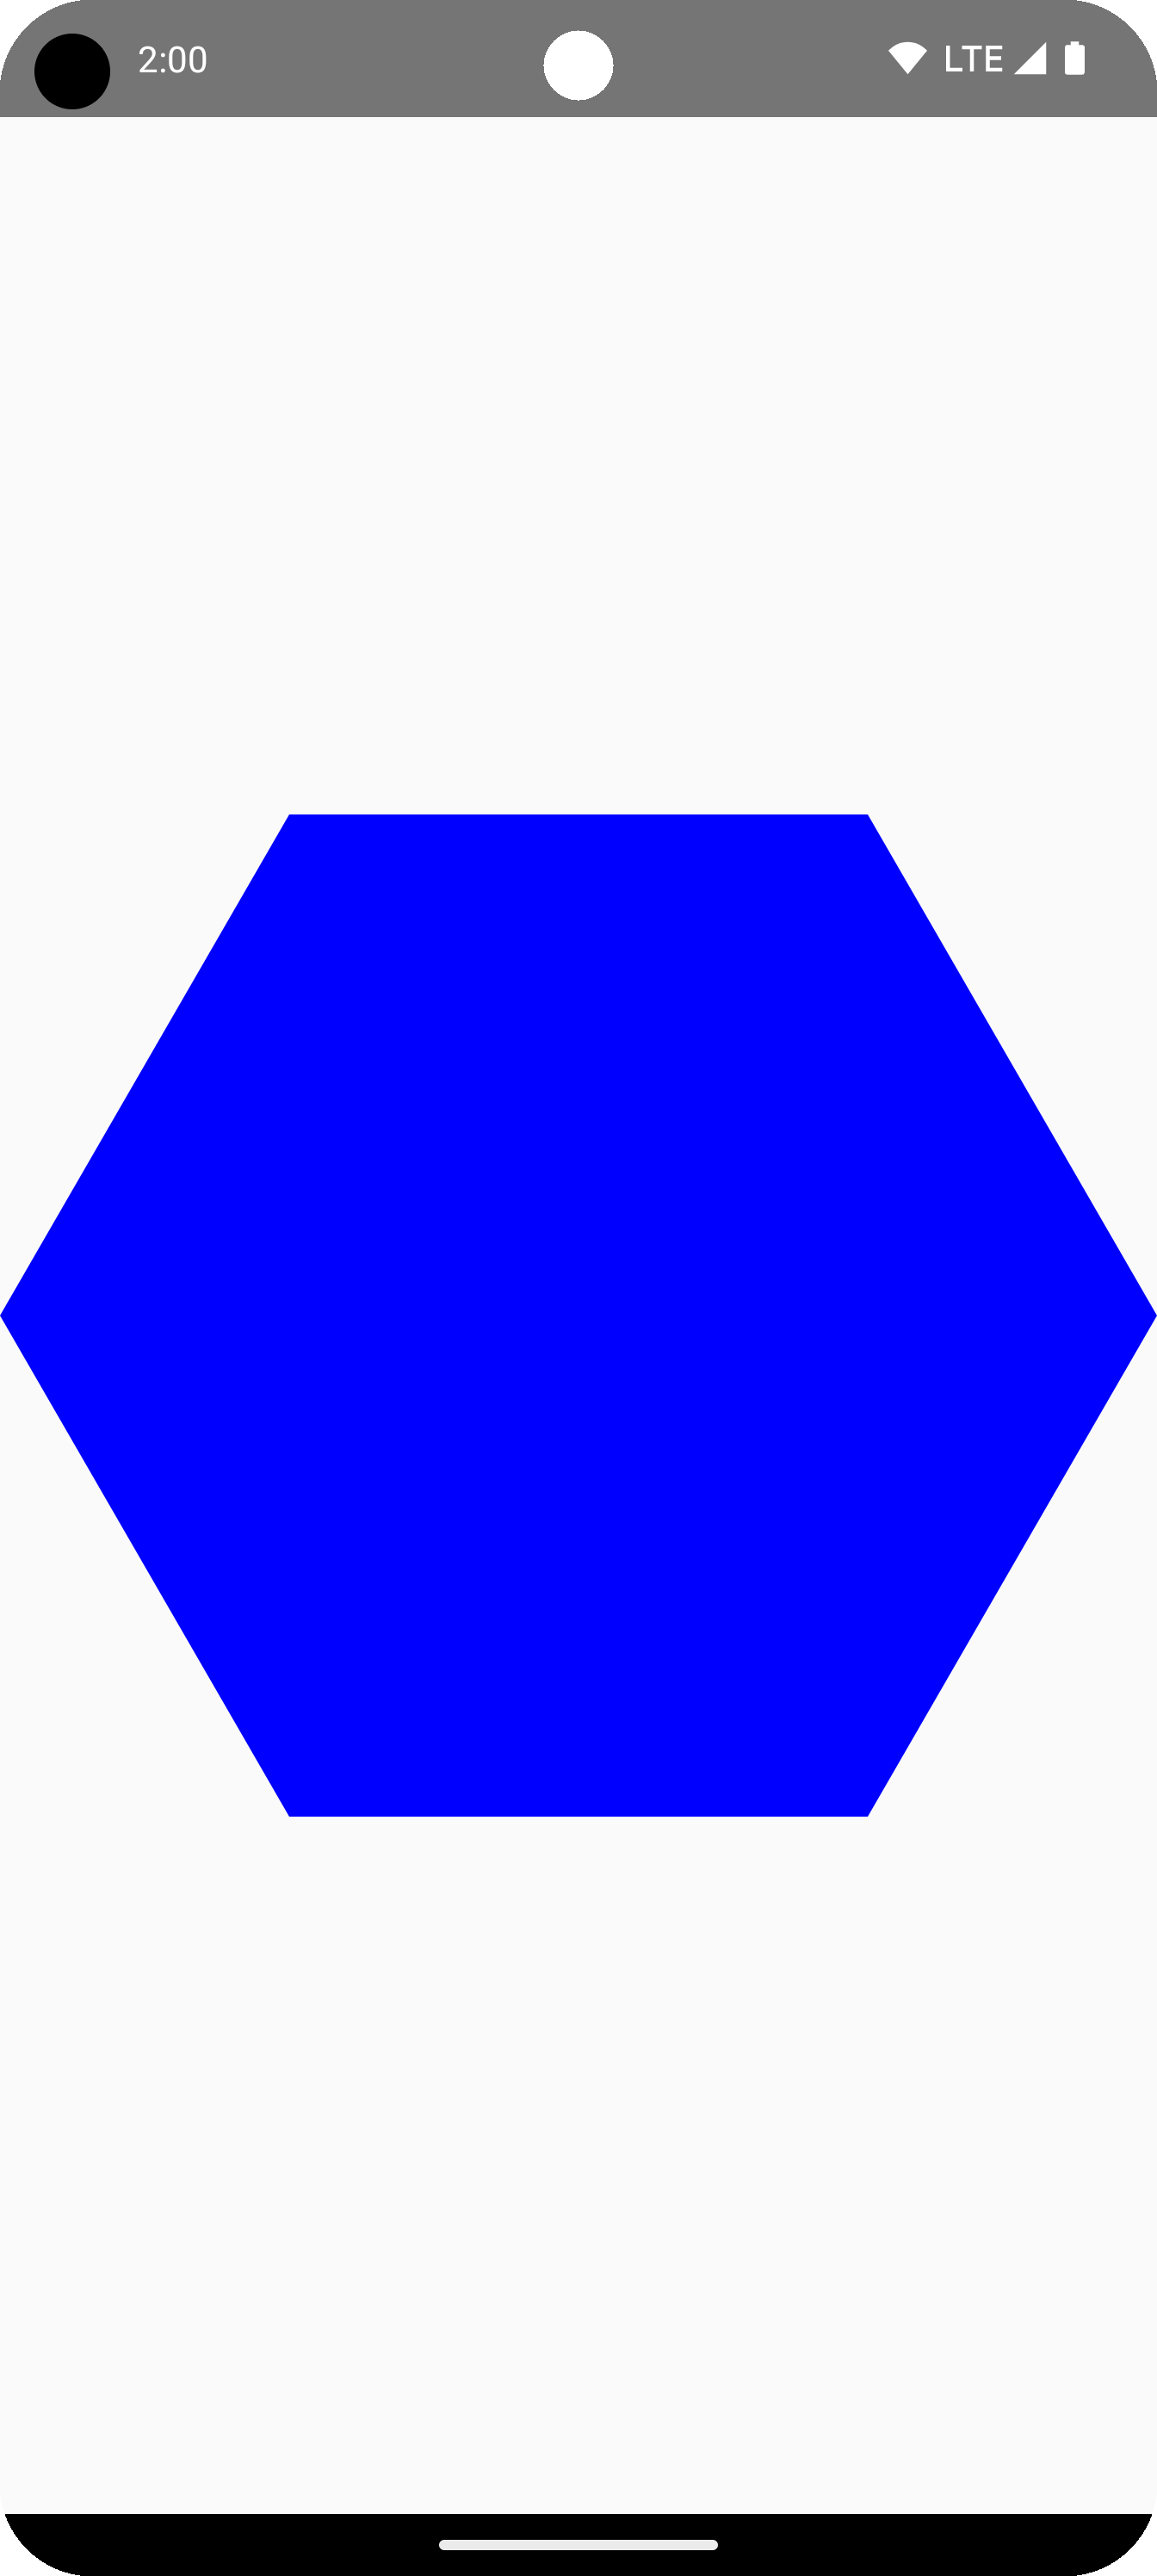 繪圖區中心的藍色六邊形